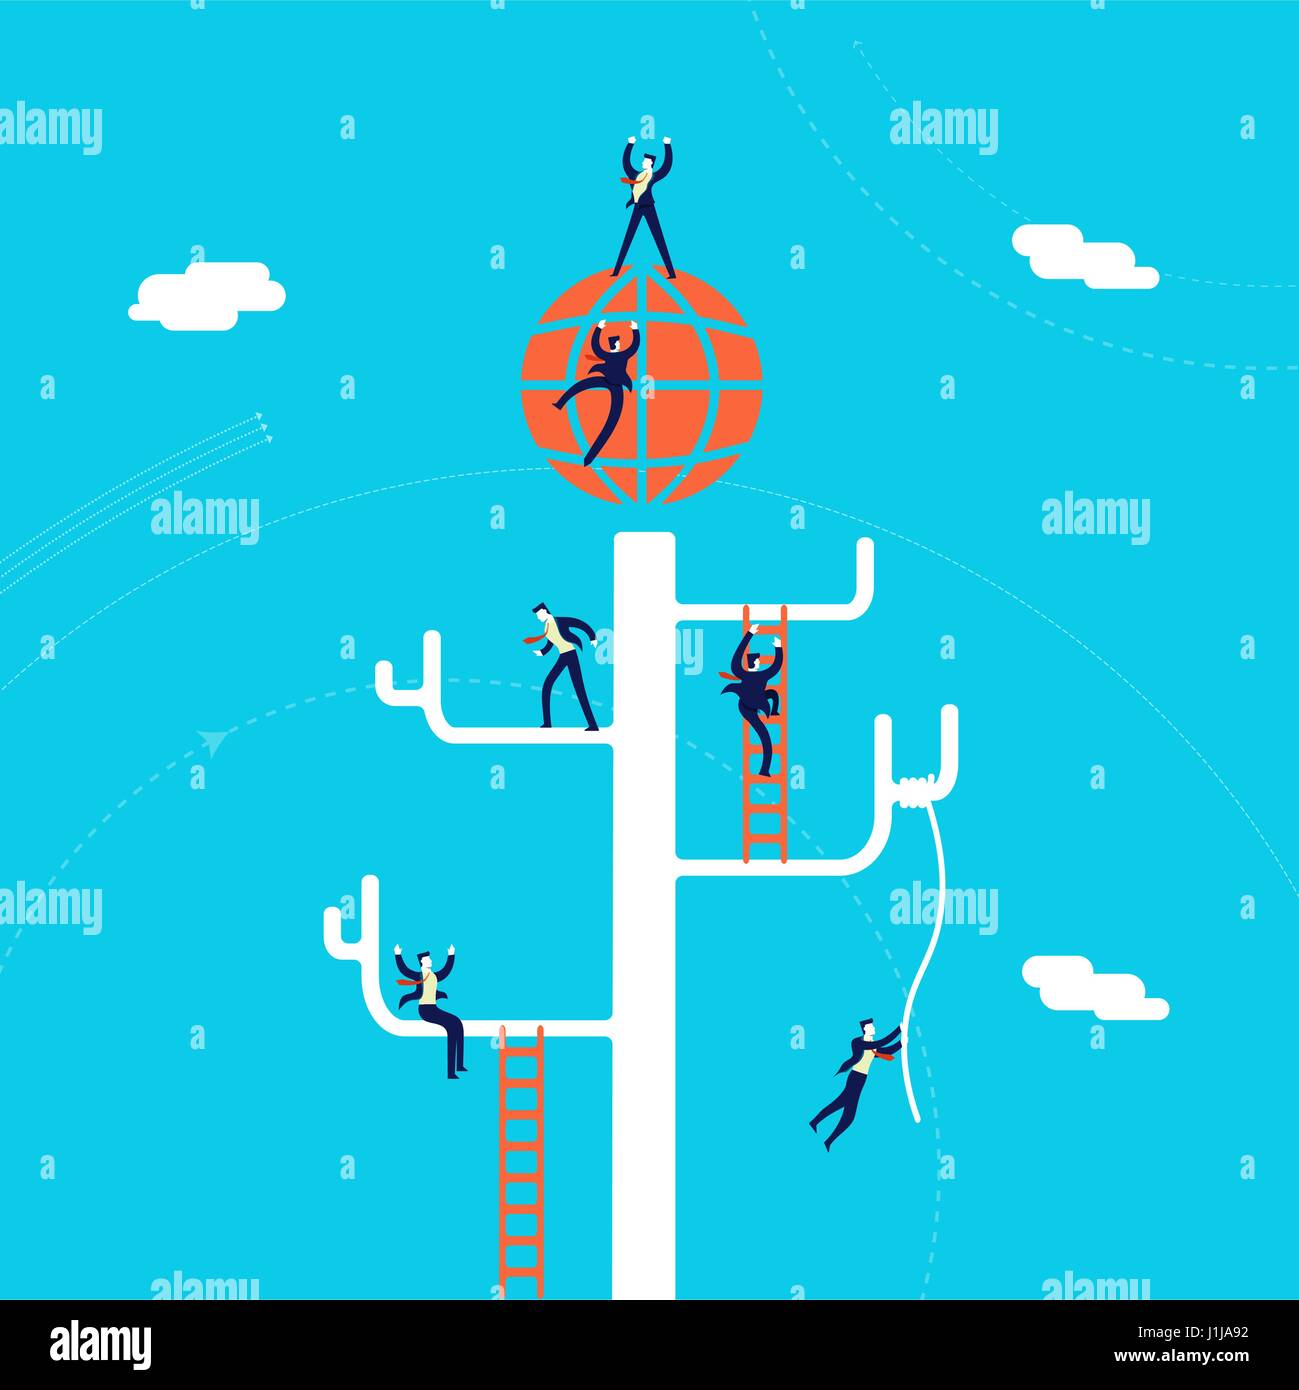 Global business concept illustration, hommes d'arbre d'escalade de l'équipe de réseau succès international. Vecteur EPS10. Illustration de Vecteur